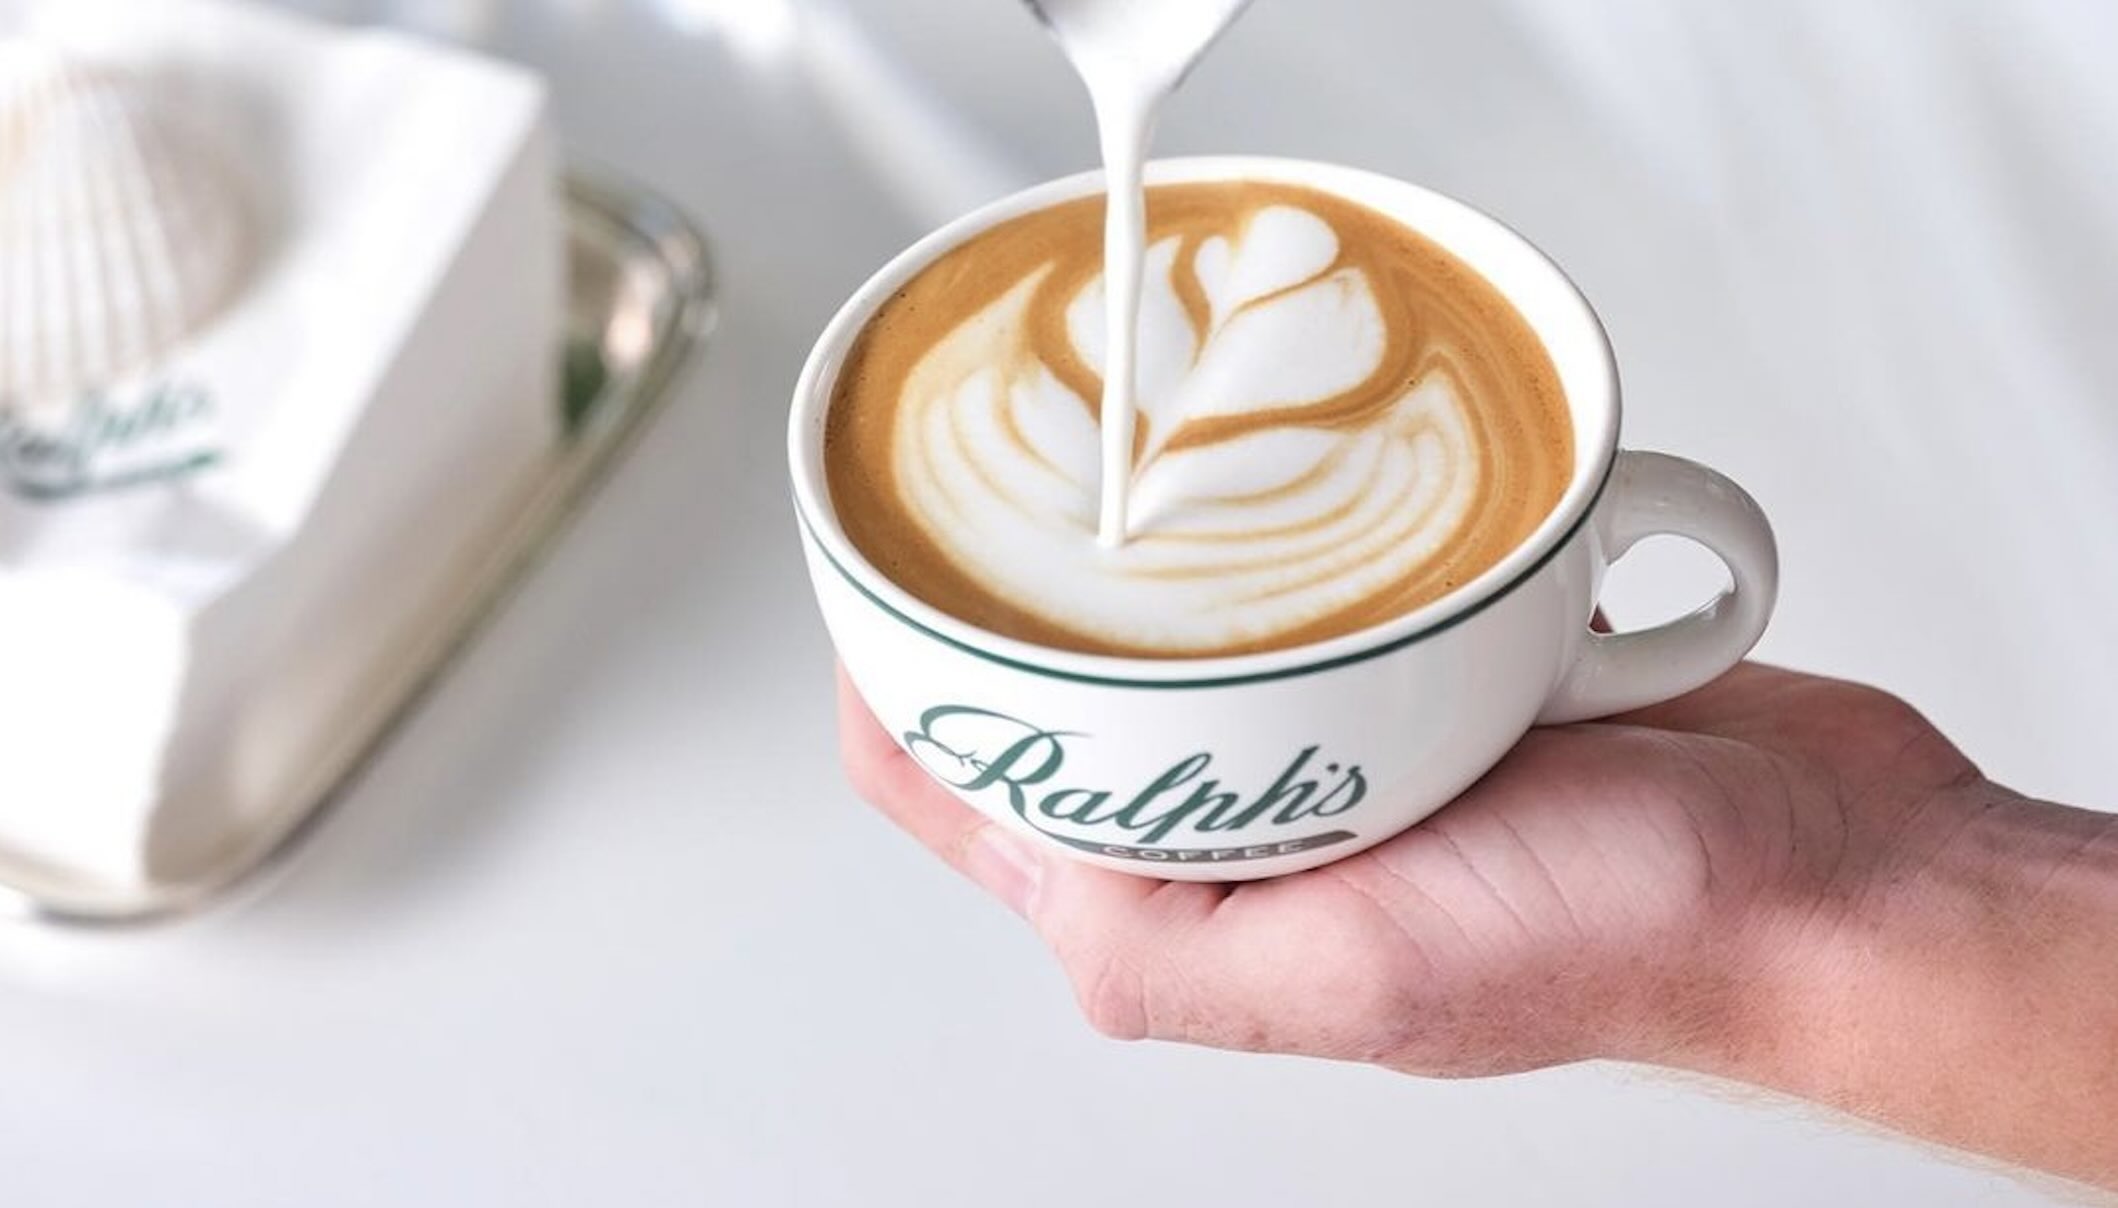 Ralph Lauren café